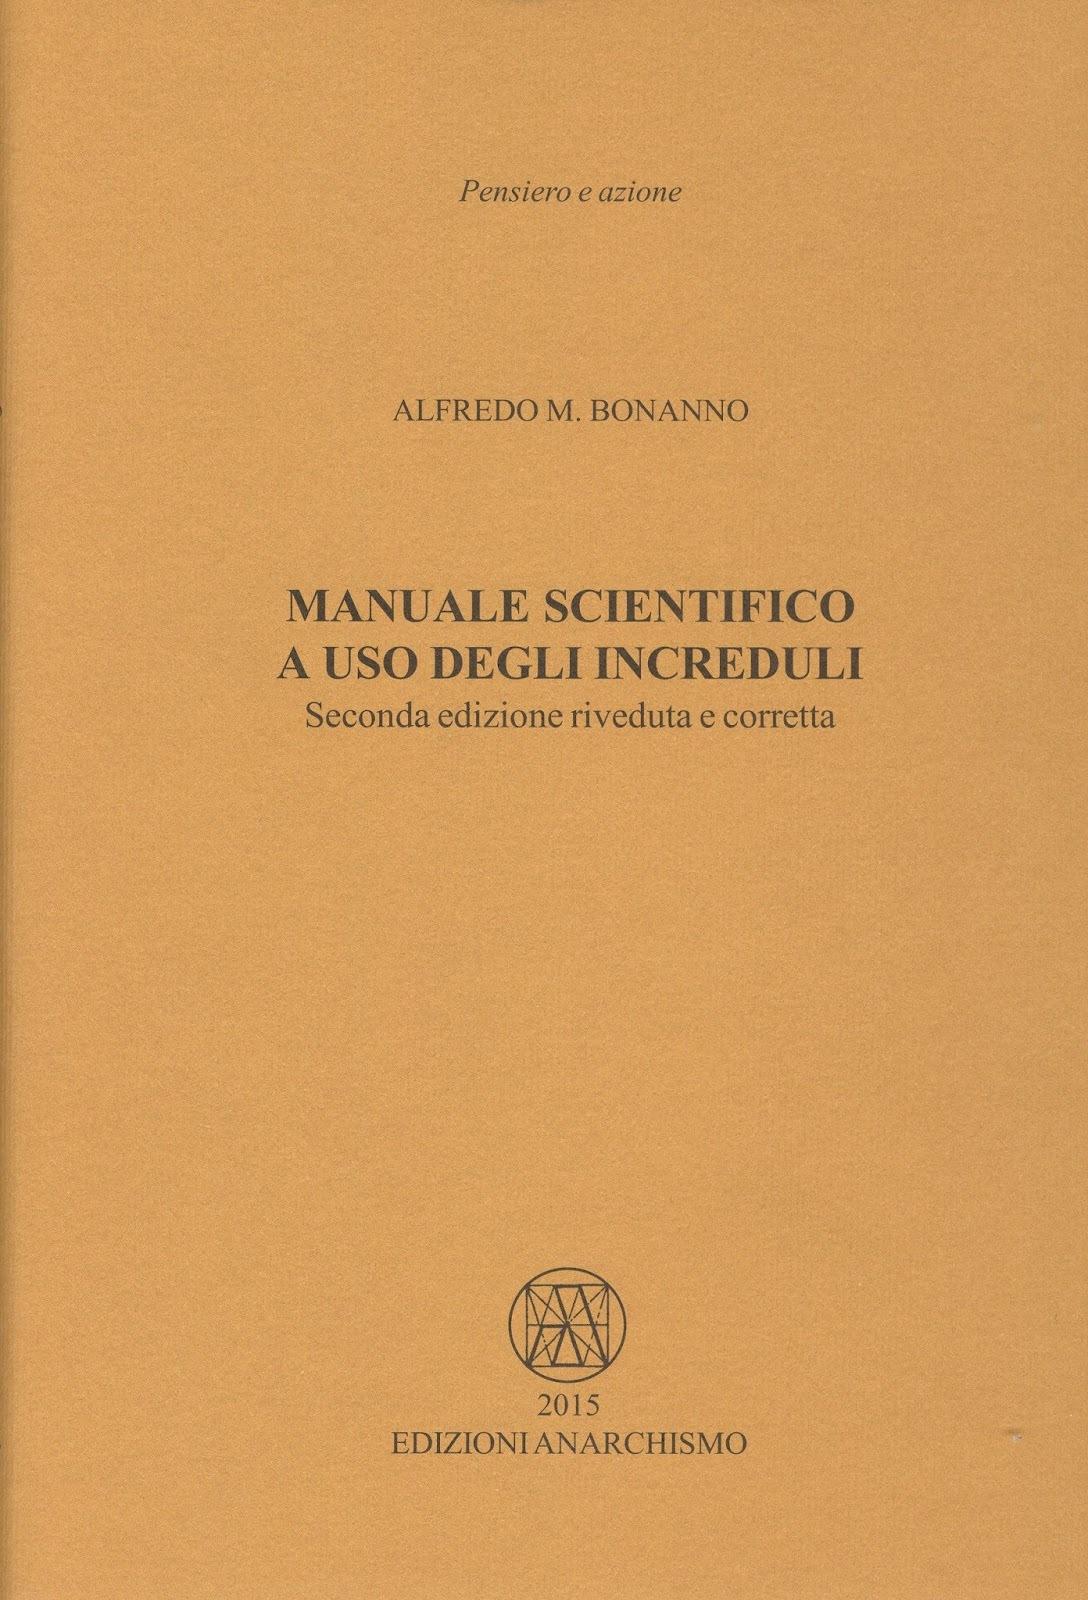 m-s-manuale-scientifico-a-uso-degli-increduli-x-cover.jpg